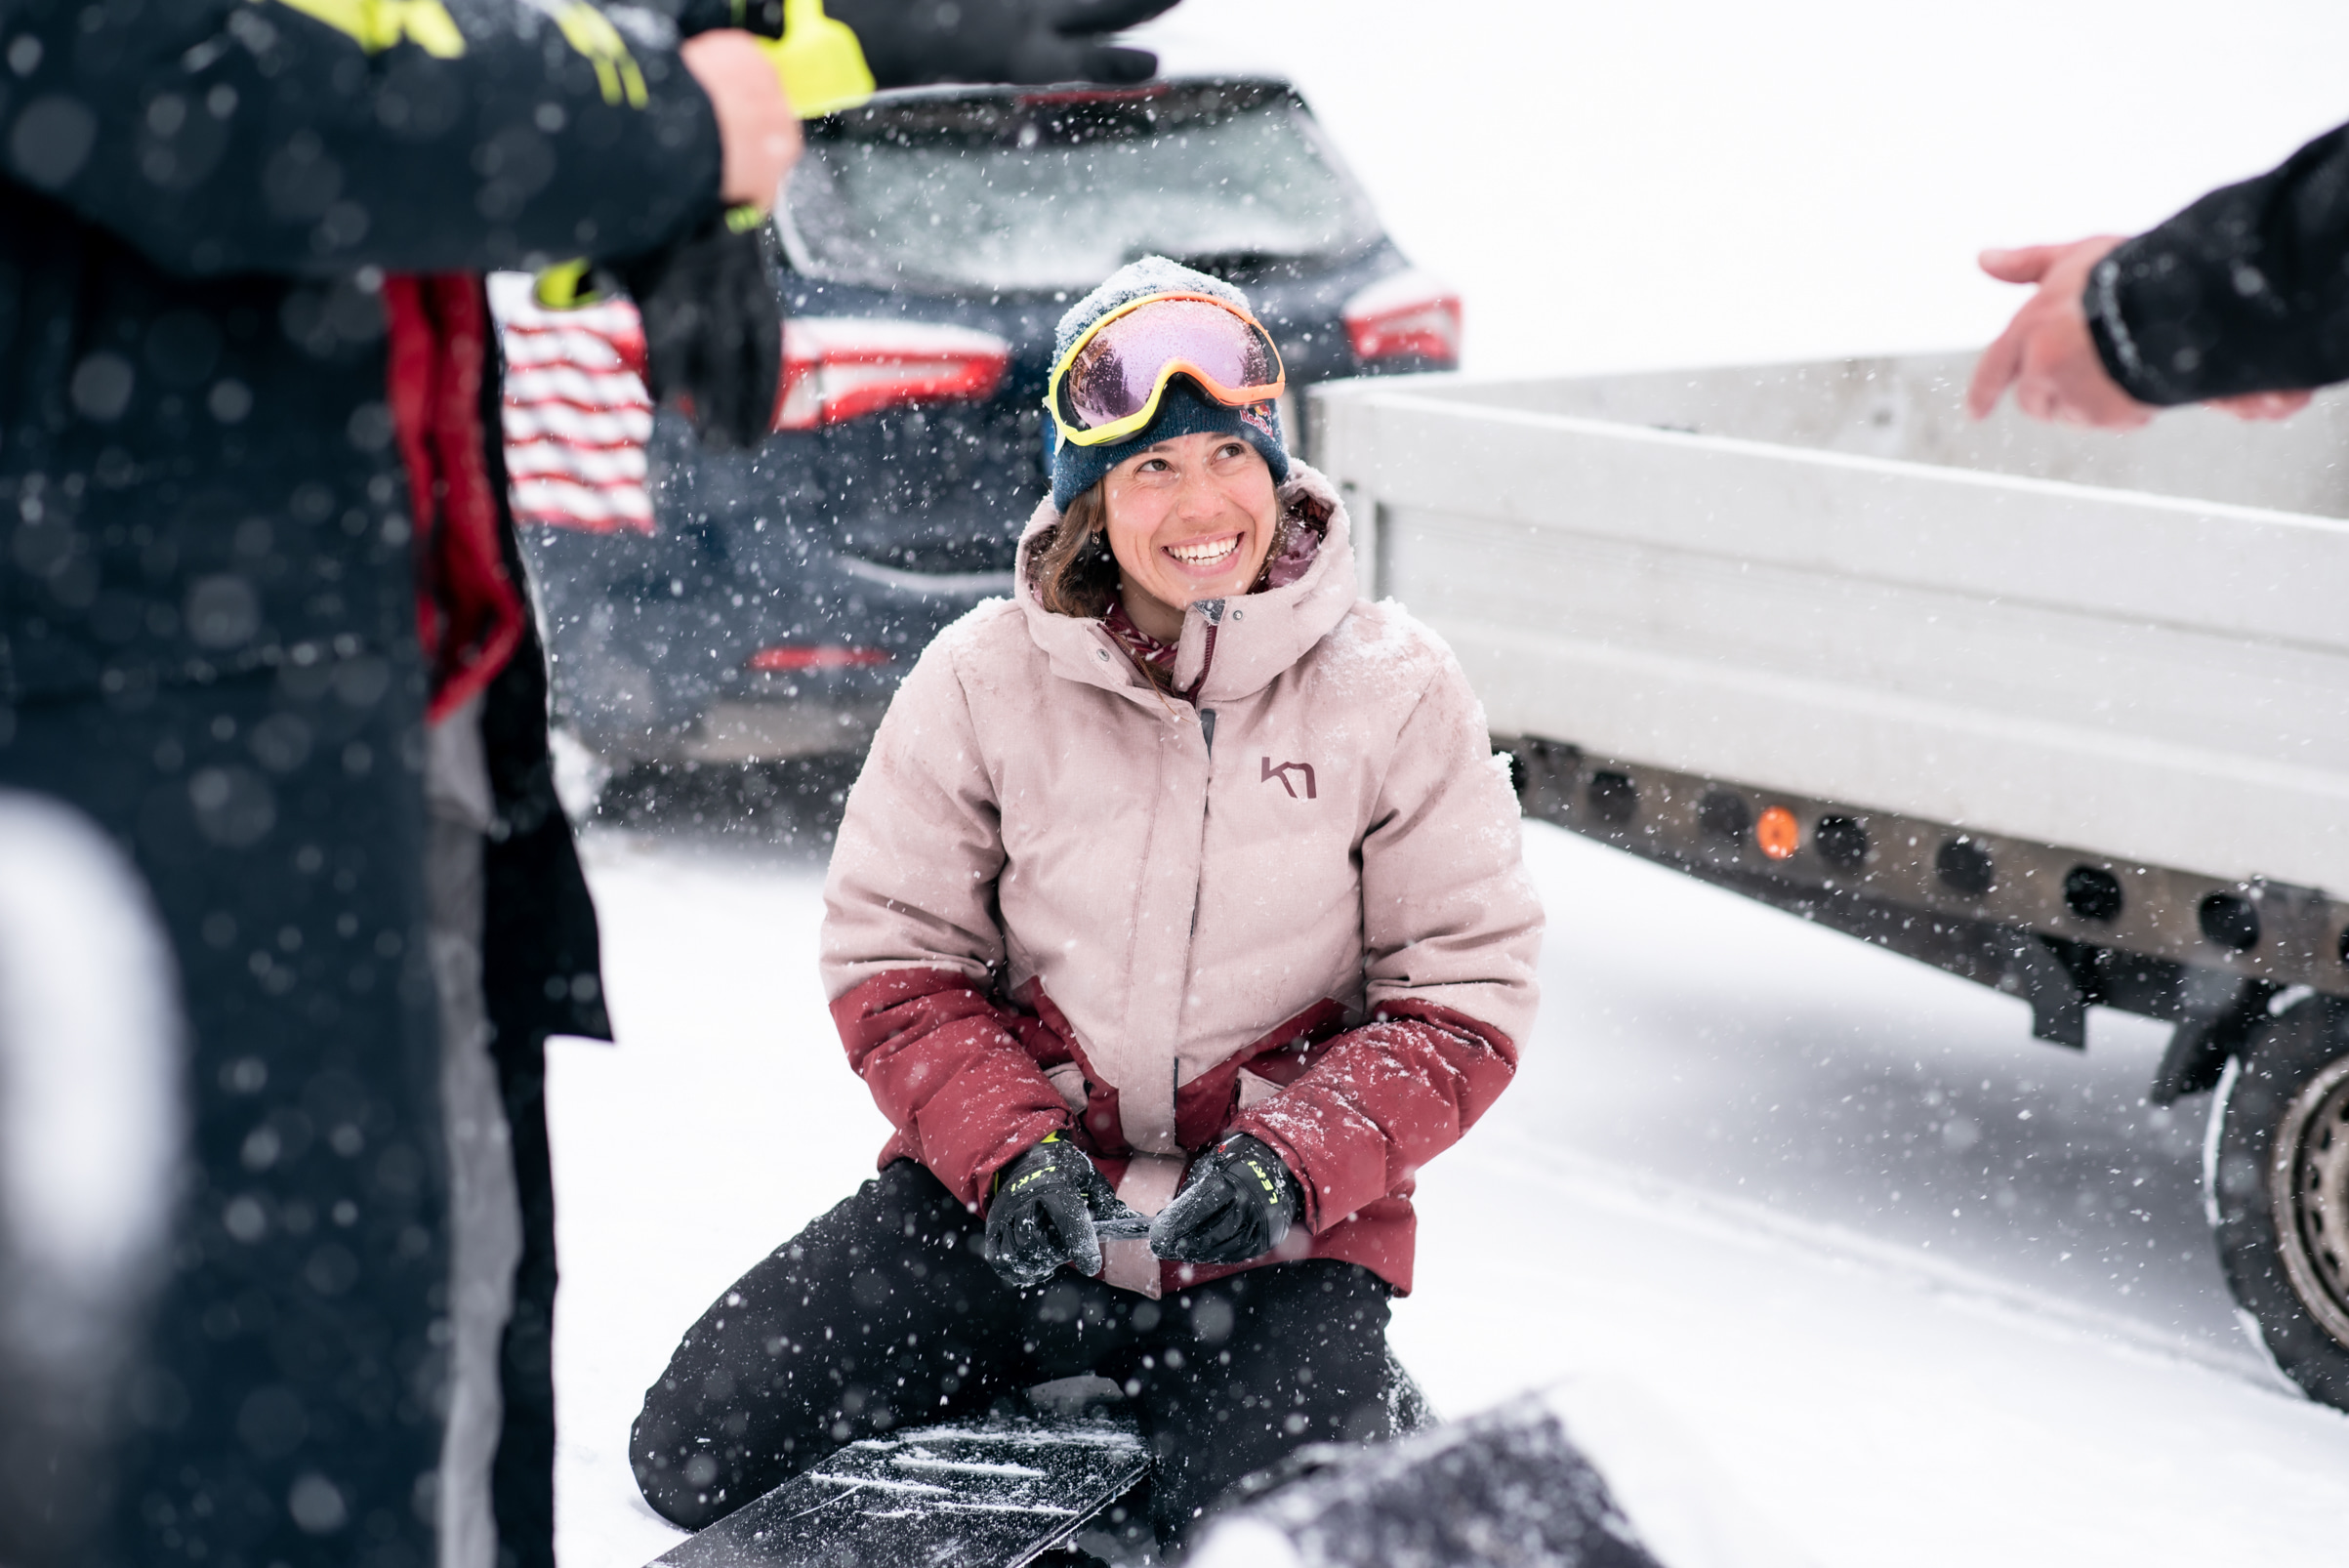 Snowboardcrossařka Eva Samková si připravuje svůj snowboard na trénink.